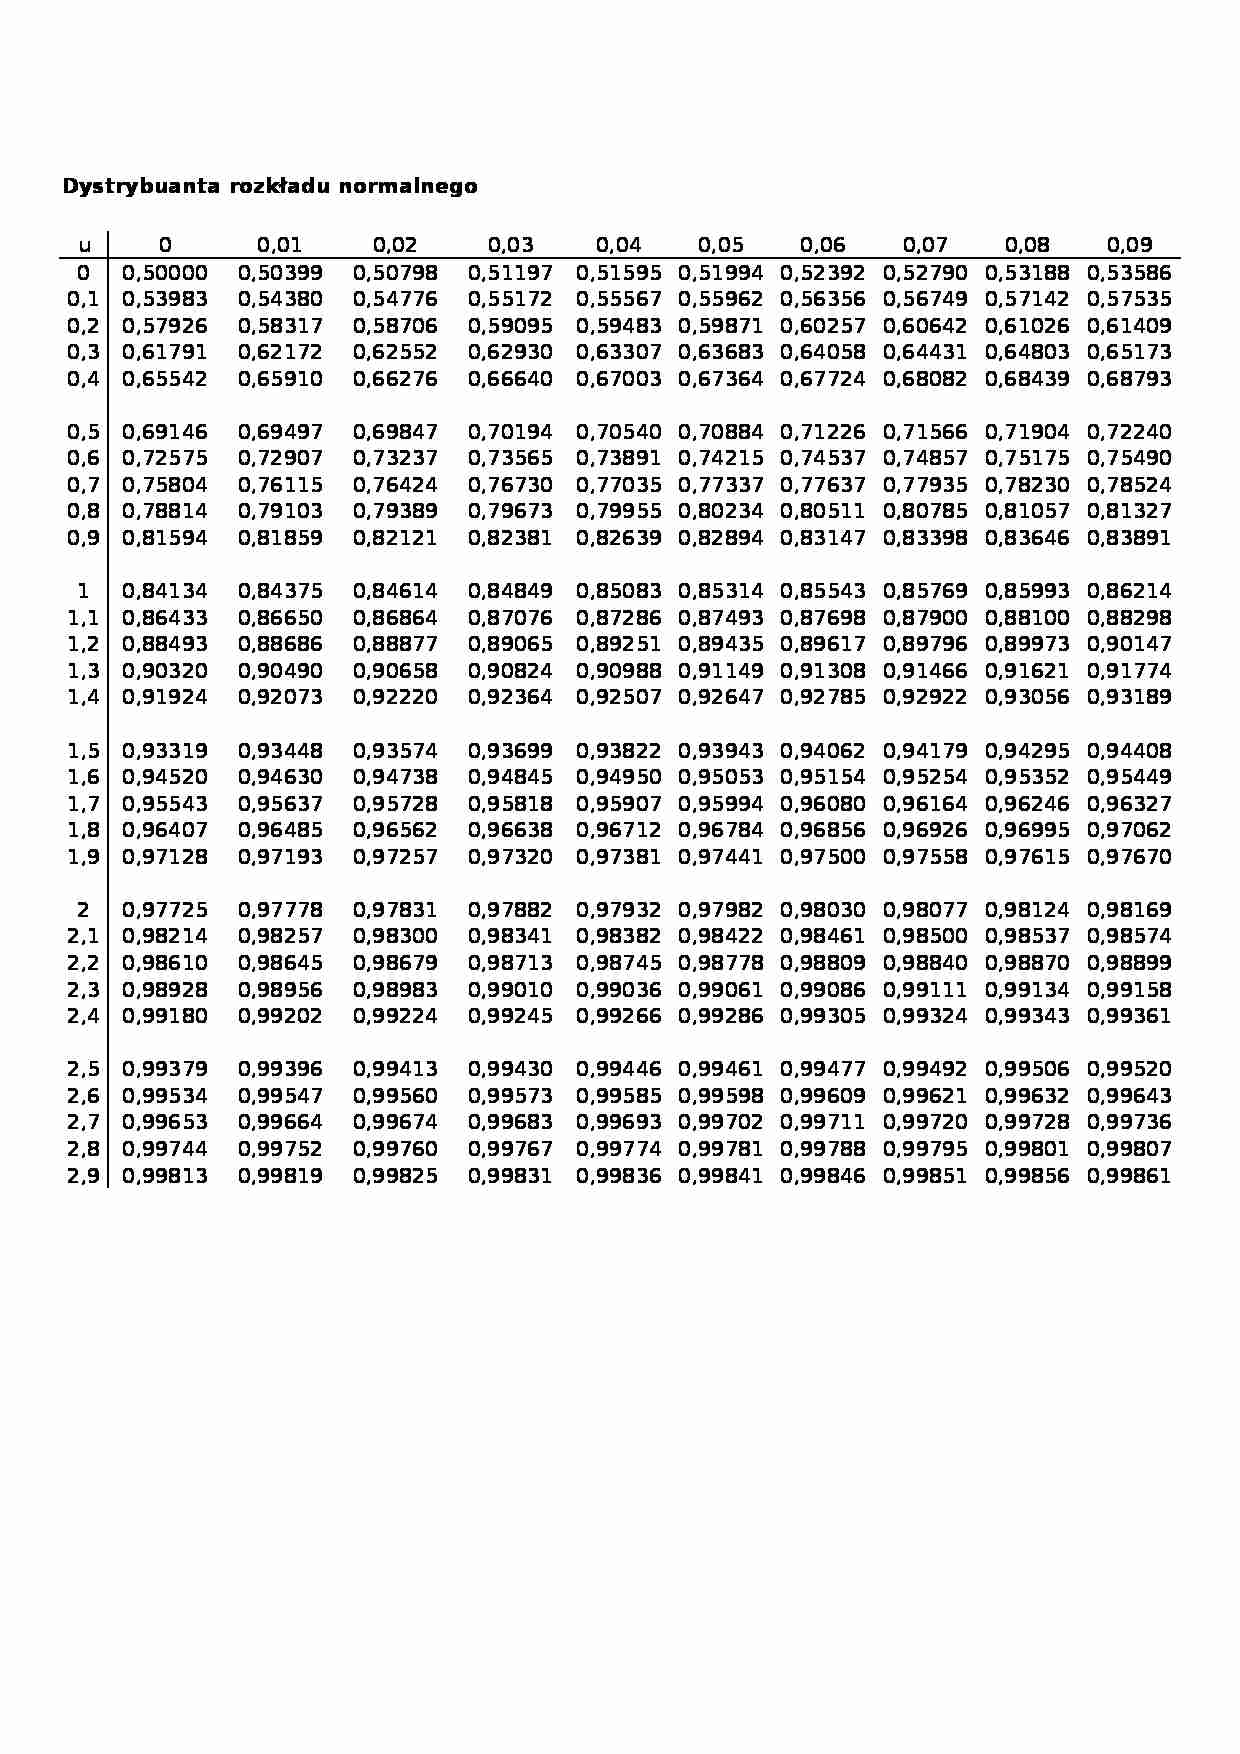 Dystrybuanta rozkładu normalnego - tabela - strona 1